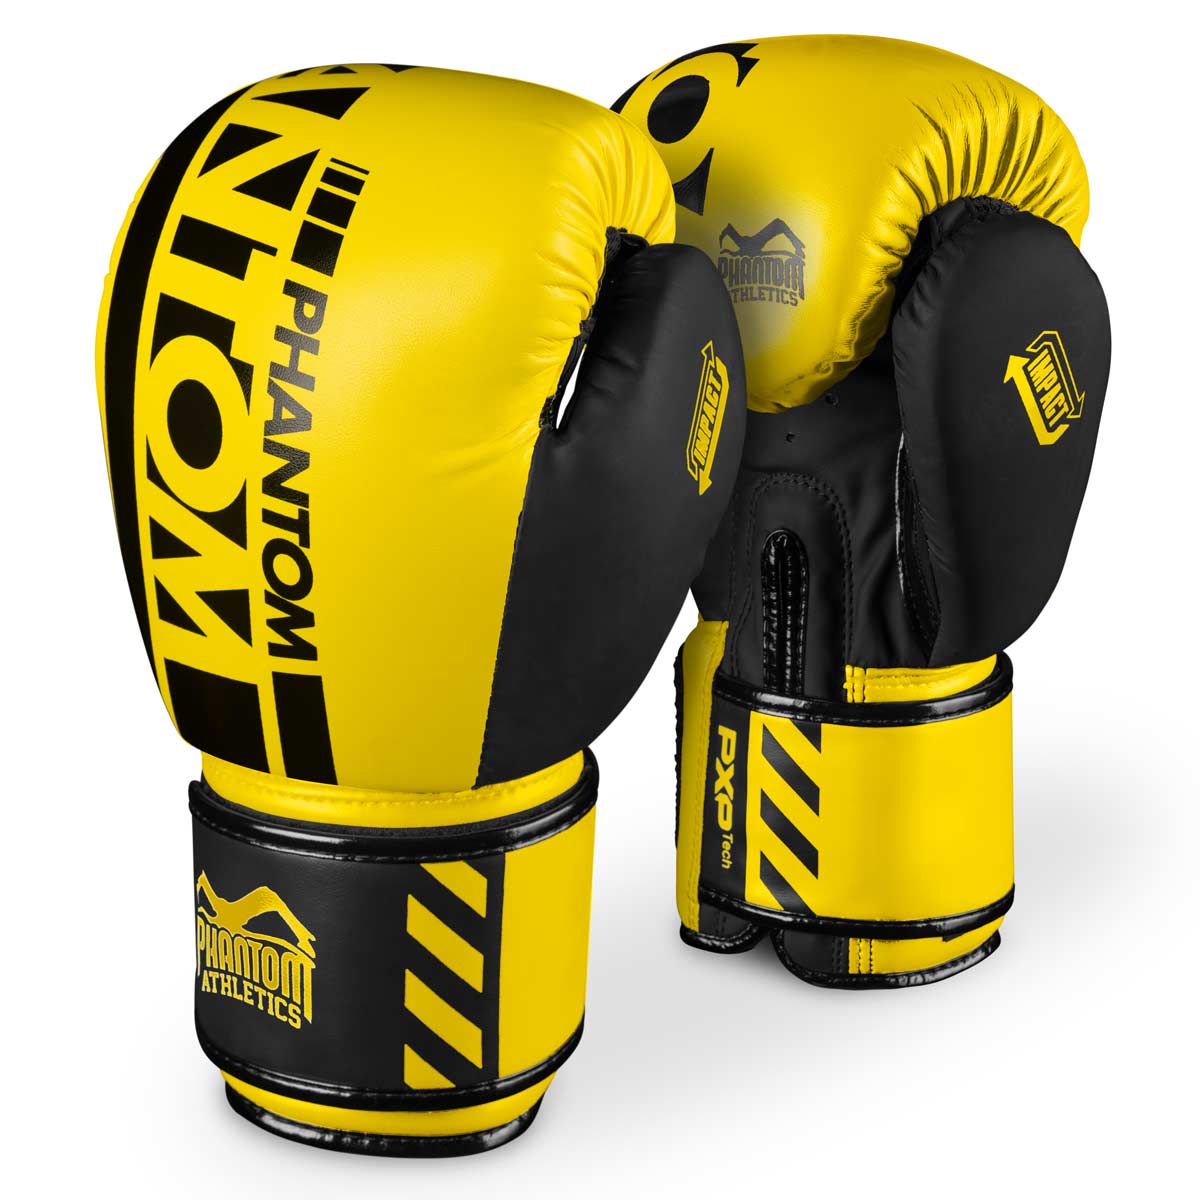 Phantom APEX NEON Boxhandschuhe. Hochwertige Boxing Gloves für deinen Kampfsport. Perfekte Verarbeitung machen diese Boxhandschuhe ideal für Training, Sparring und Wettkampf. Ideal für MMA, Muay Thai, Boxen und Kickboxen. Hier in Neon Gelb.